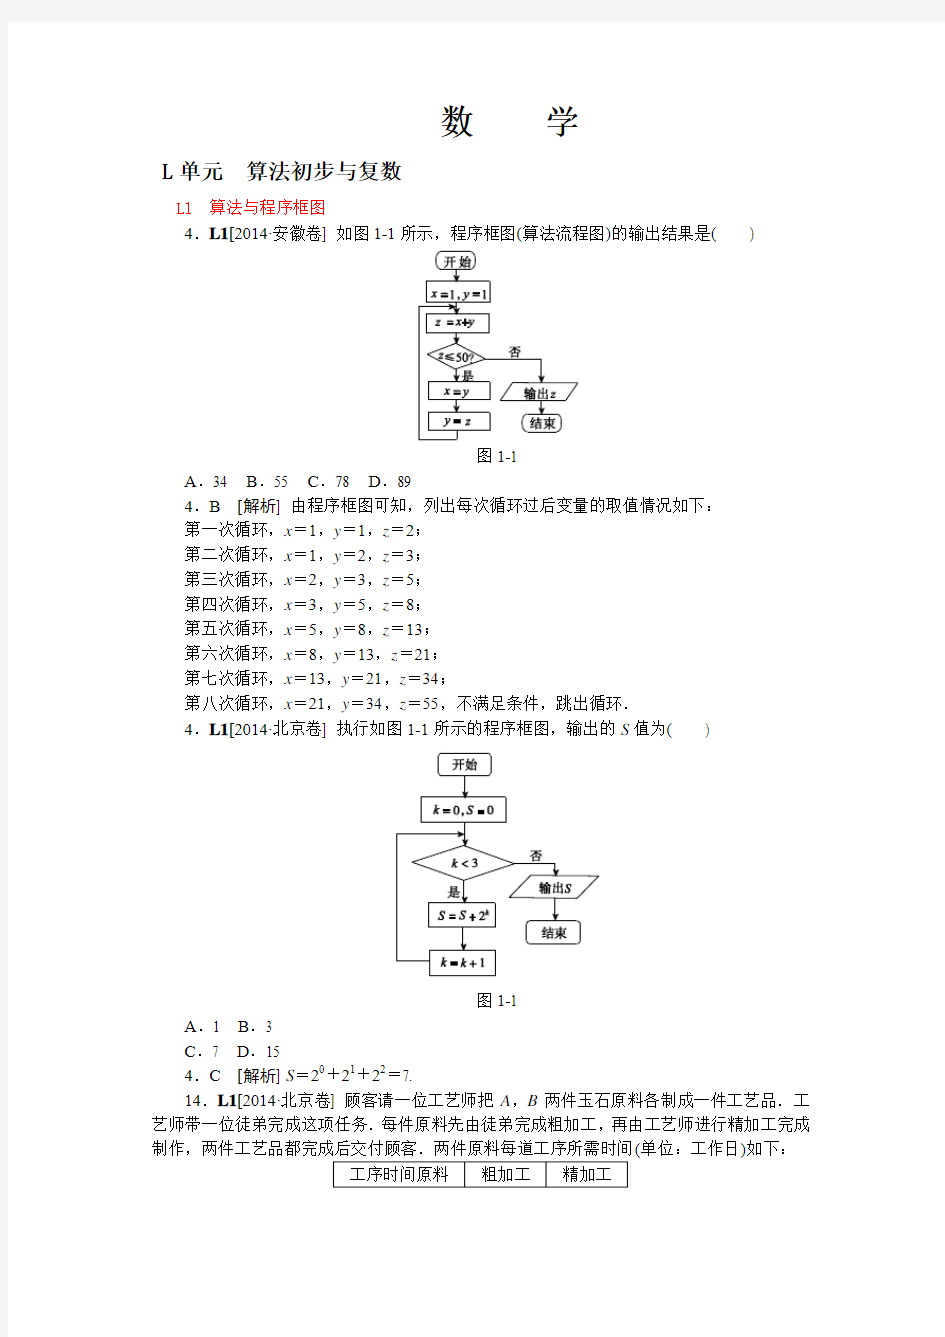 2014年高考文科数学真题解析分类汇编：L单元 算法初步与复数(纯word可编辑)